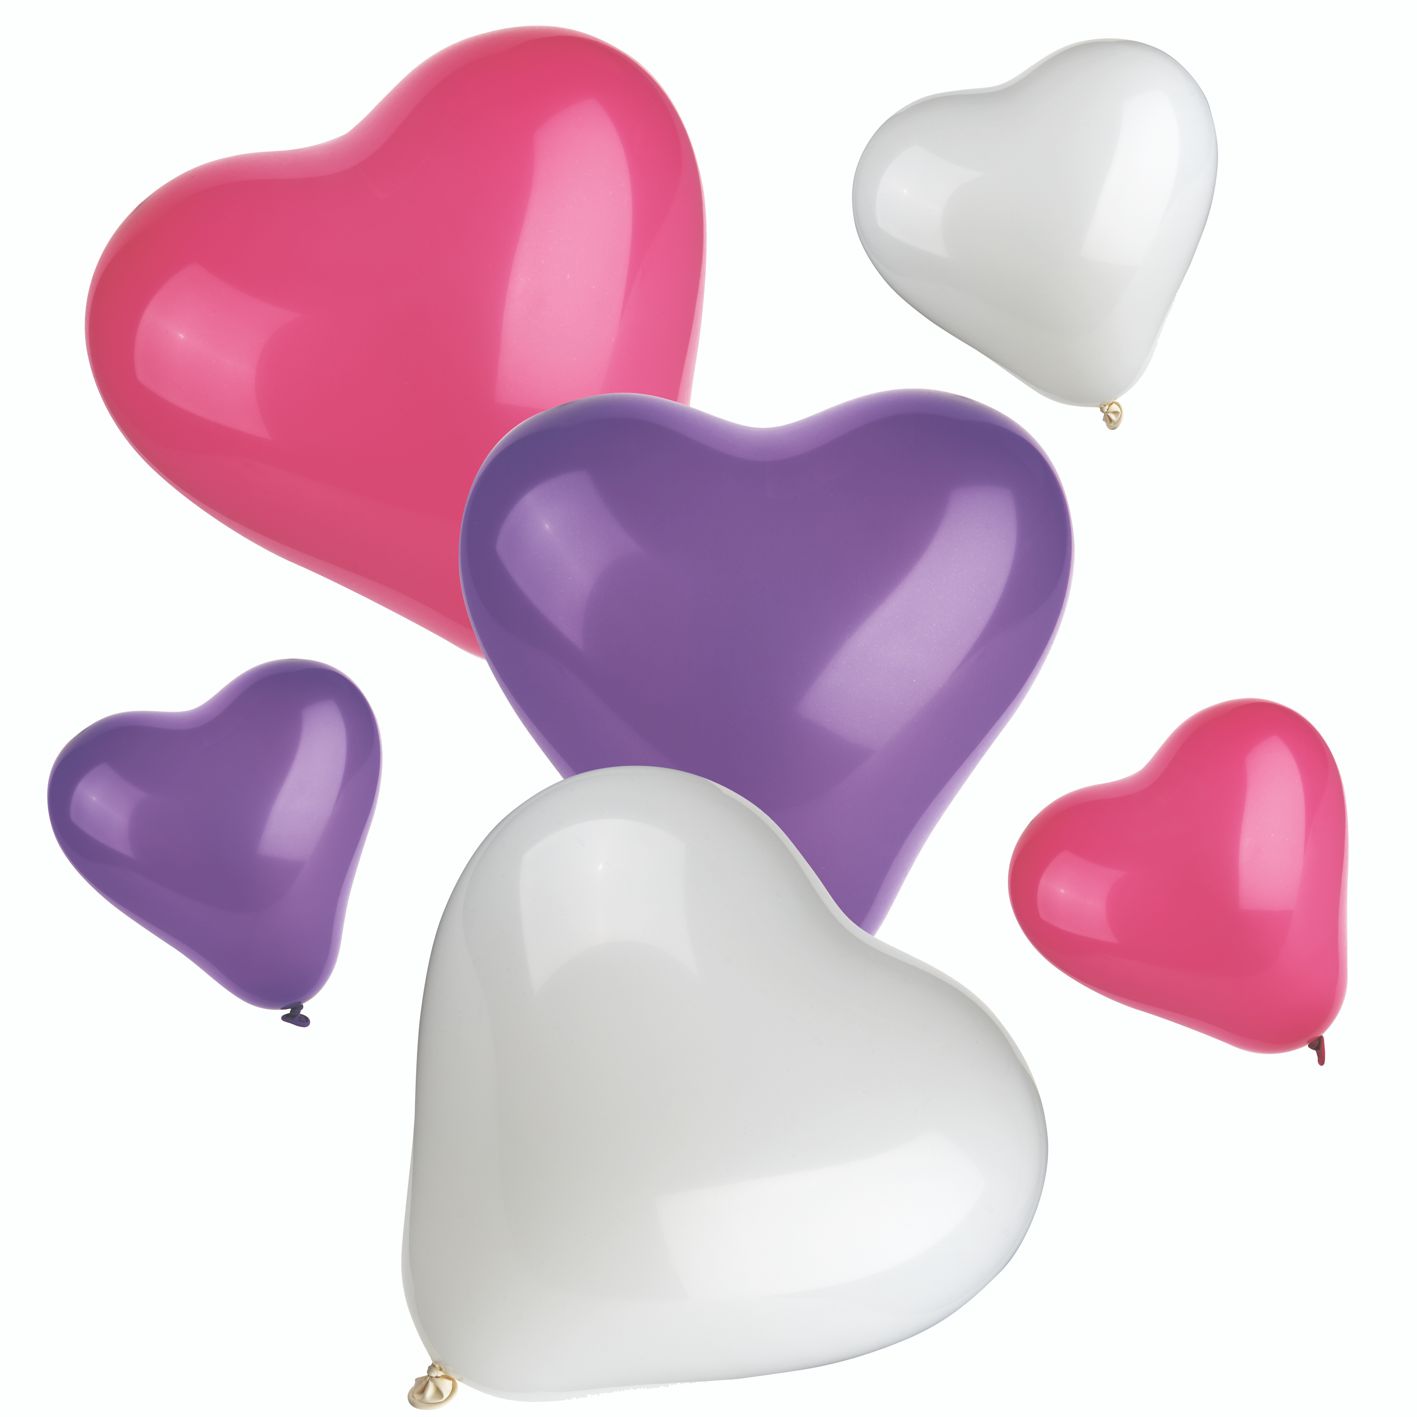 PAPSTAR 12 Luftballons farbig sortiert "Heart" small + medium